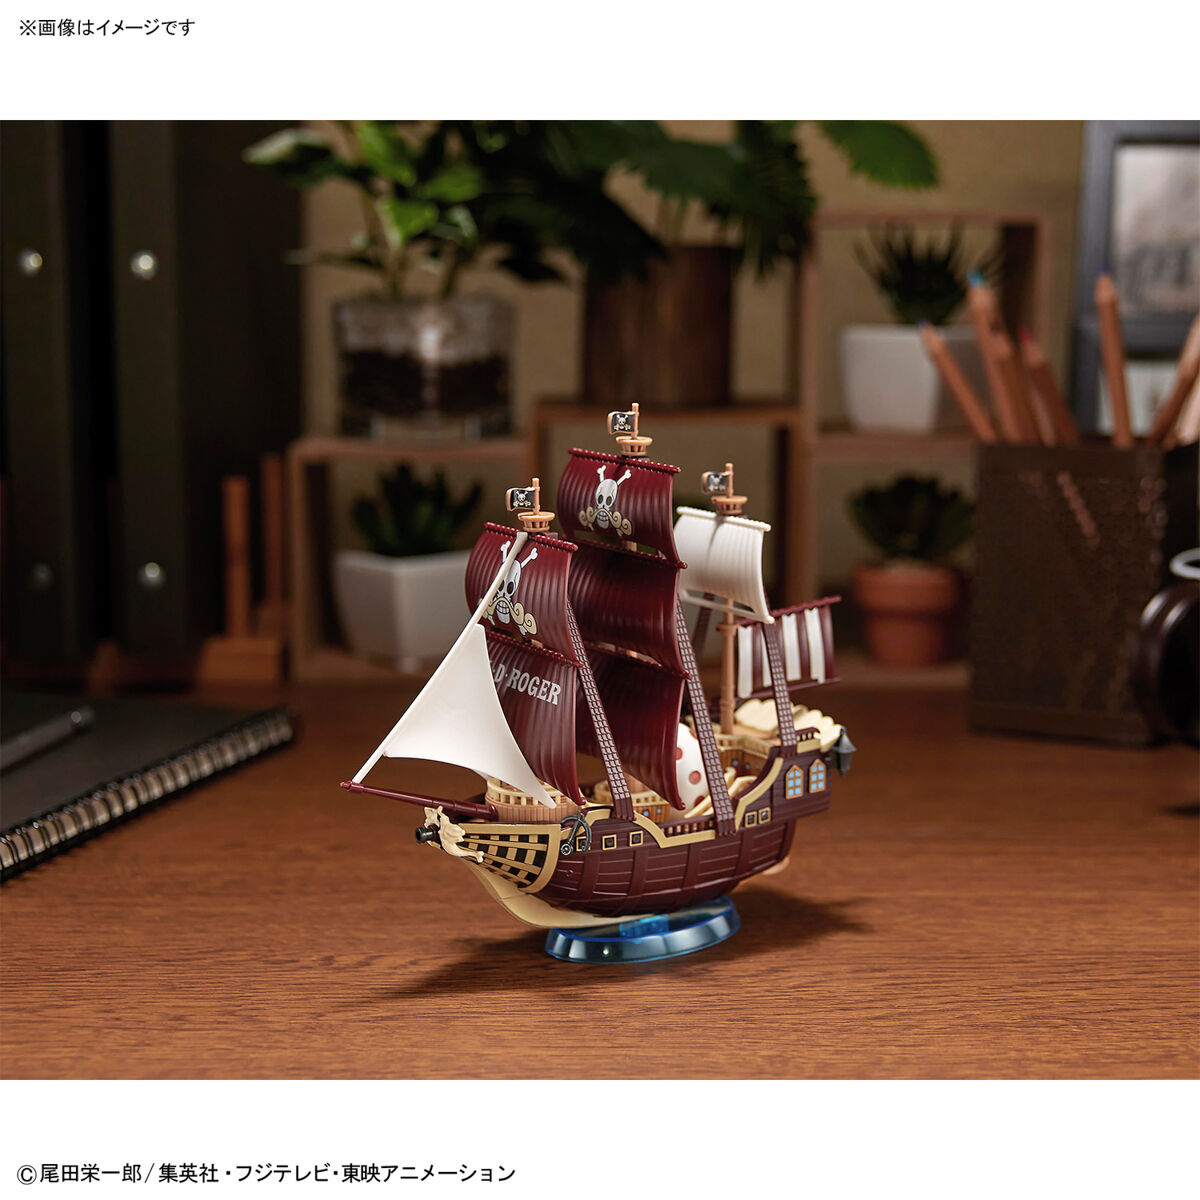 ワンピース偉大なる船(グランドシップ)コレクション オーロ・ジャクソン号 09